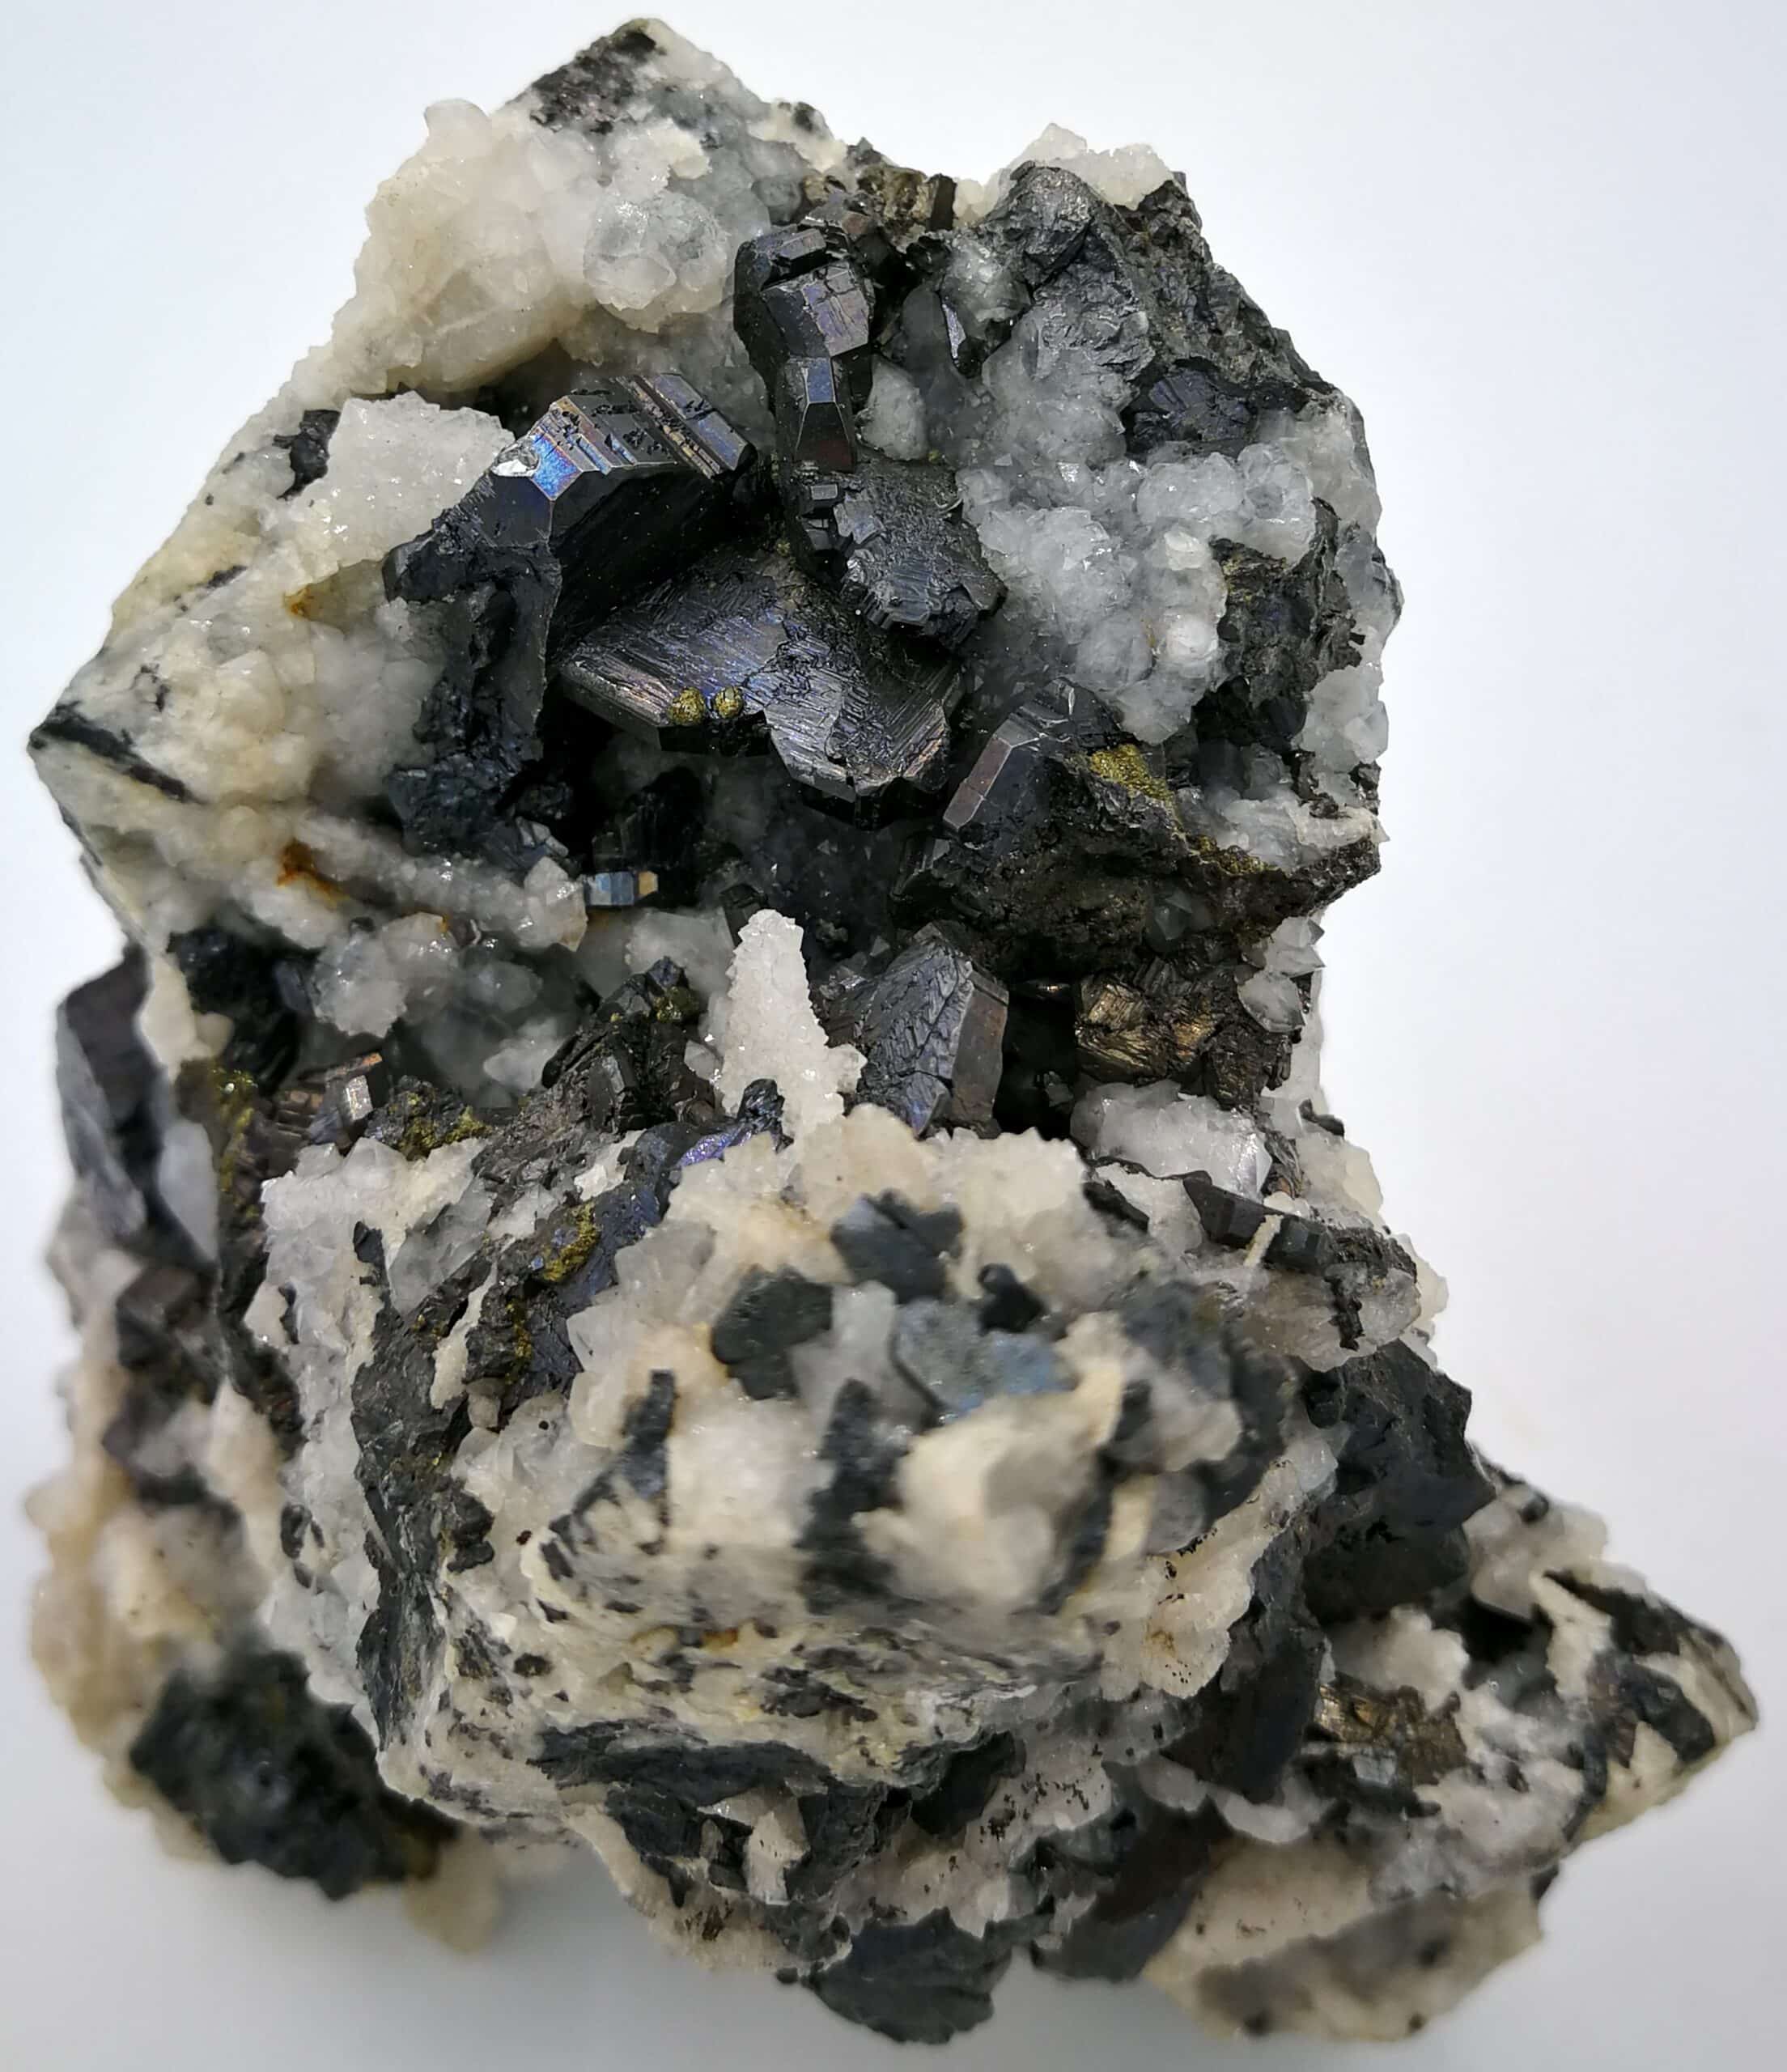 Cristaux de bournonite en cogwheel, galène, chalcopyrite et quartz, minéraux de la Herodsfoot mine, en Cornouailles, Royaume-Uni (UK).